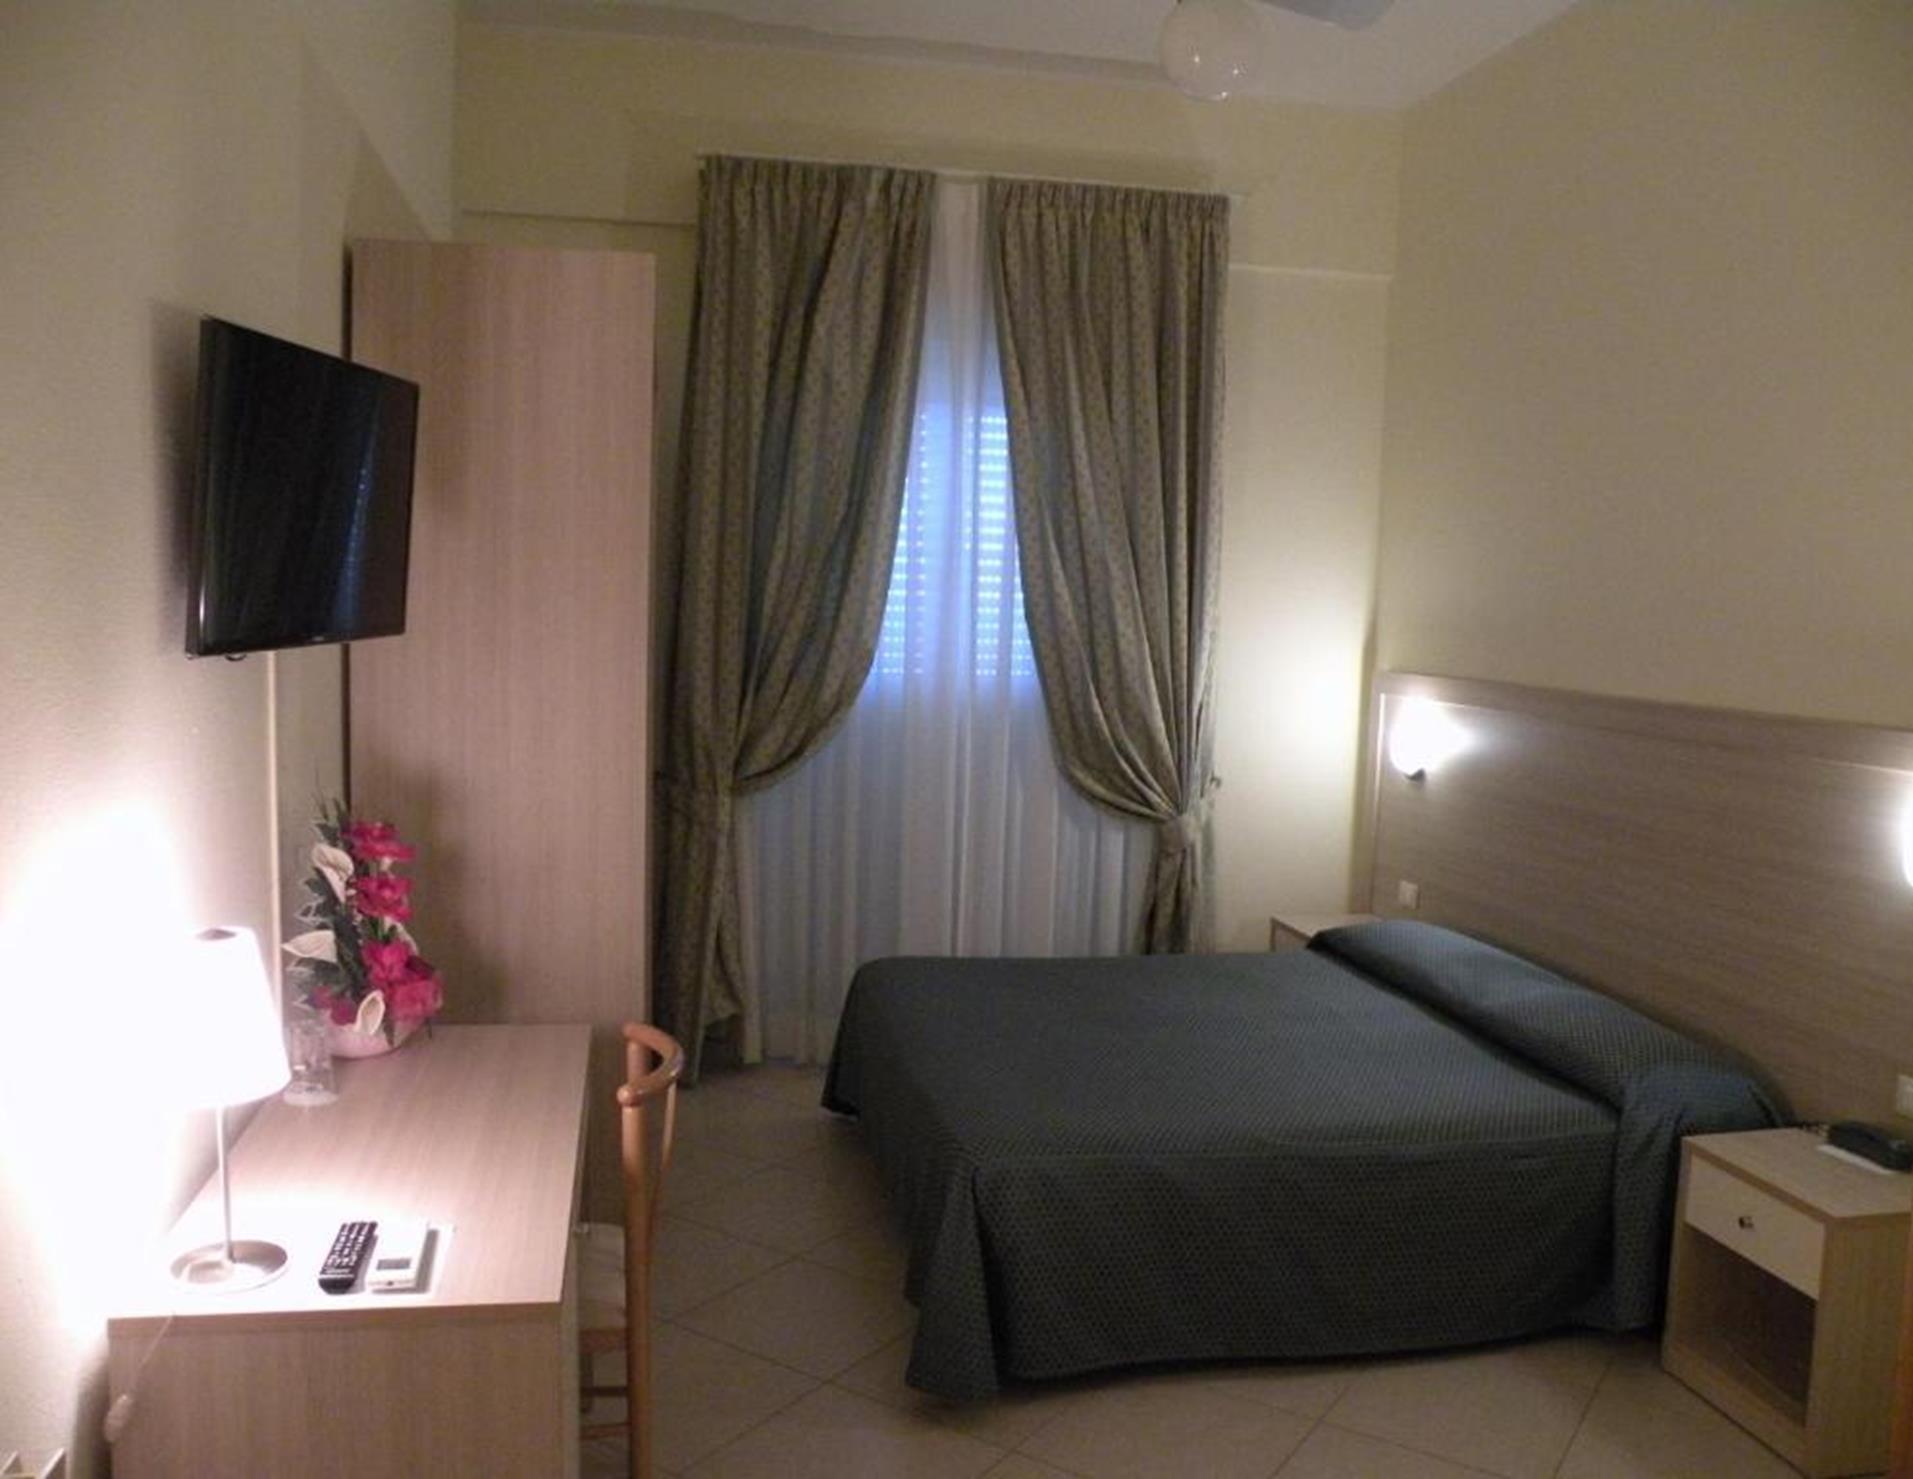 Hotel Parrini - Room 2